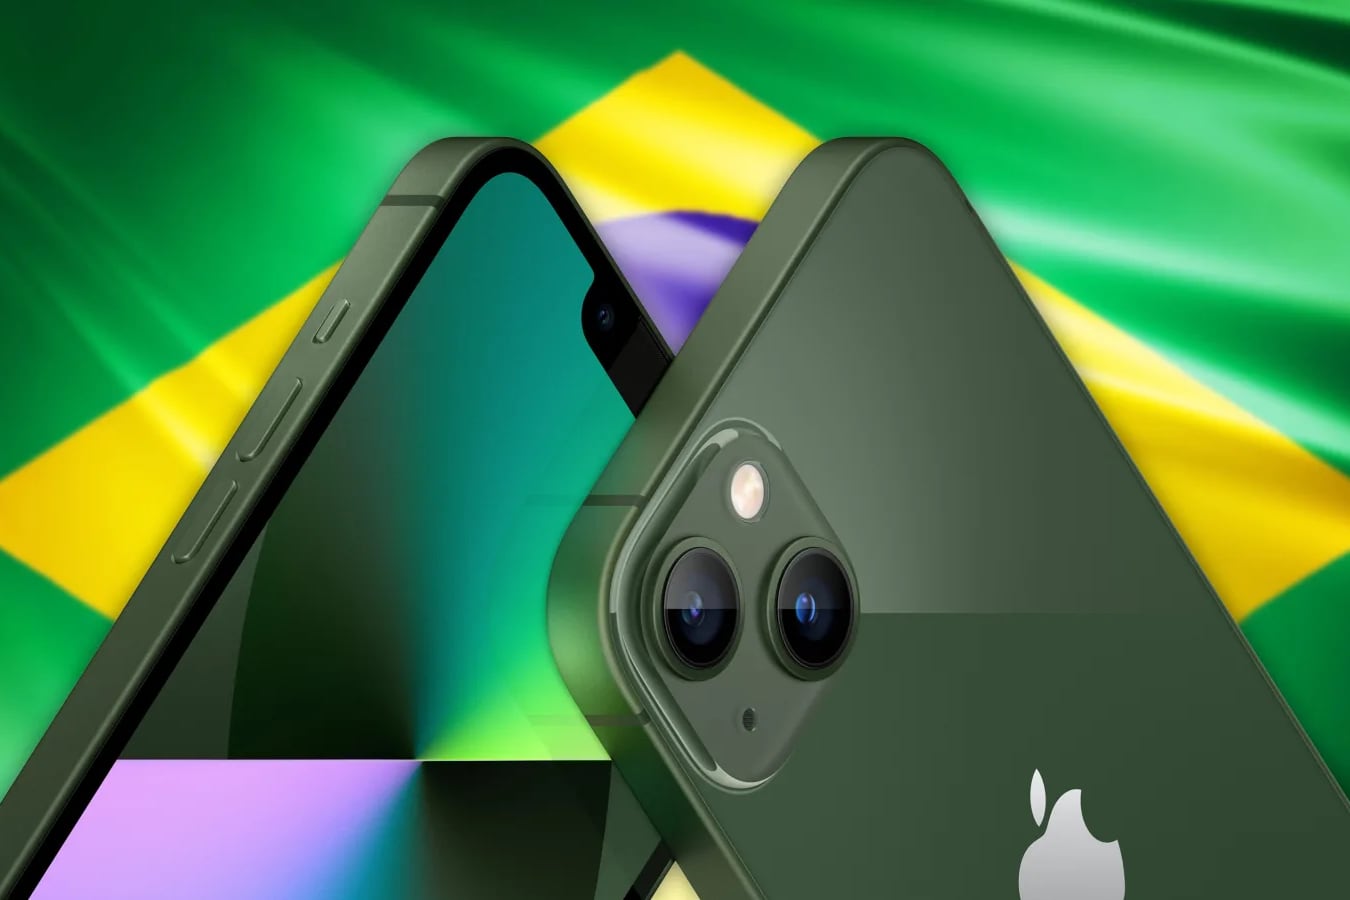 Бразилия оштрафовала Apple на 19 миллионов долларов за отсутствие зарядки в комплекте iPhone